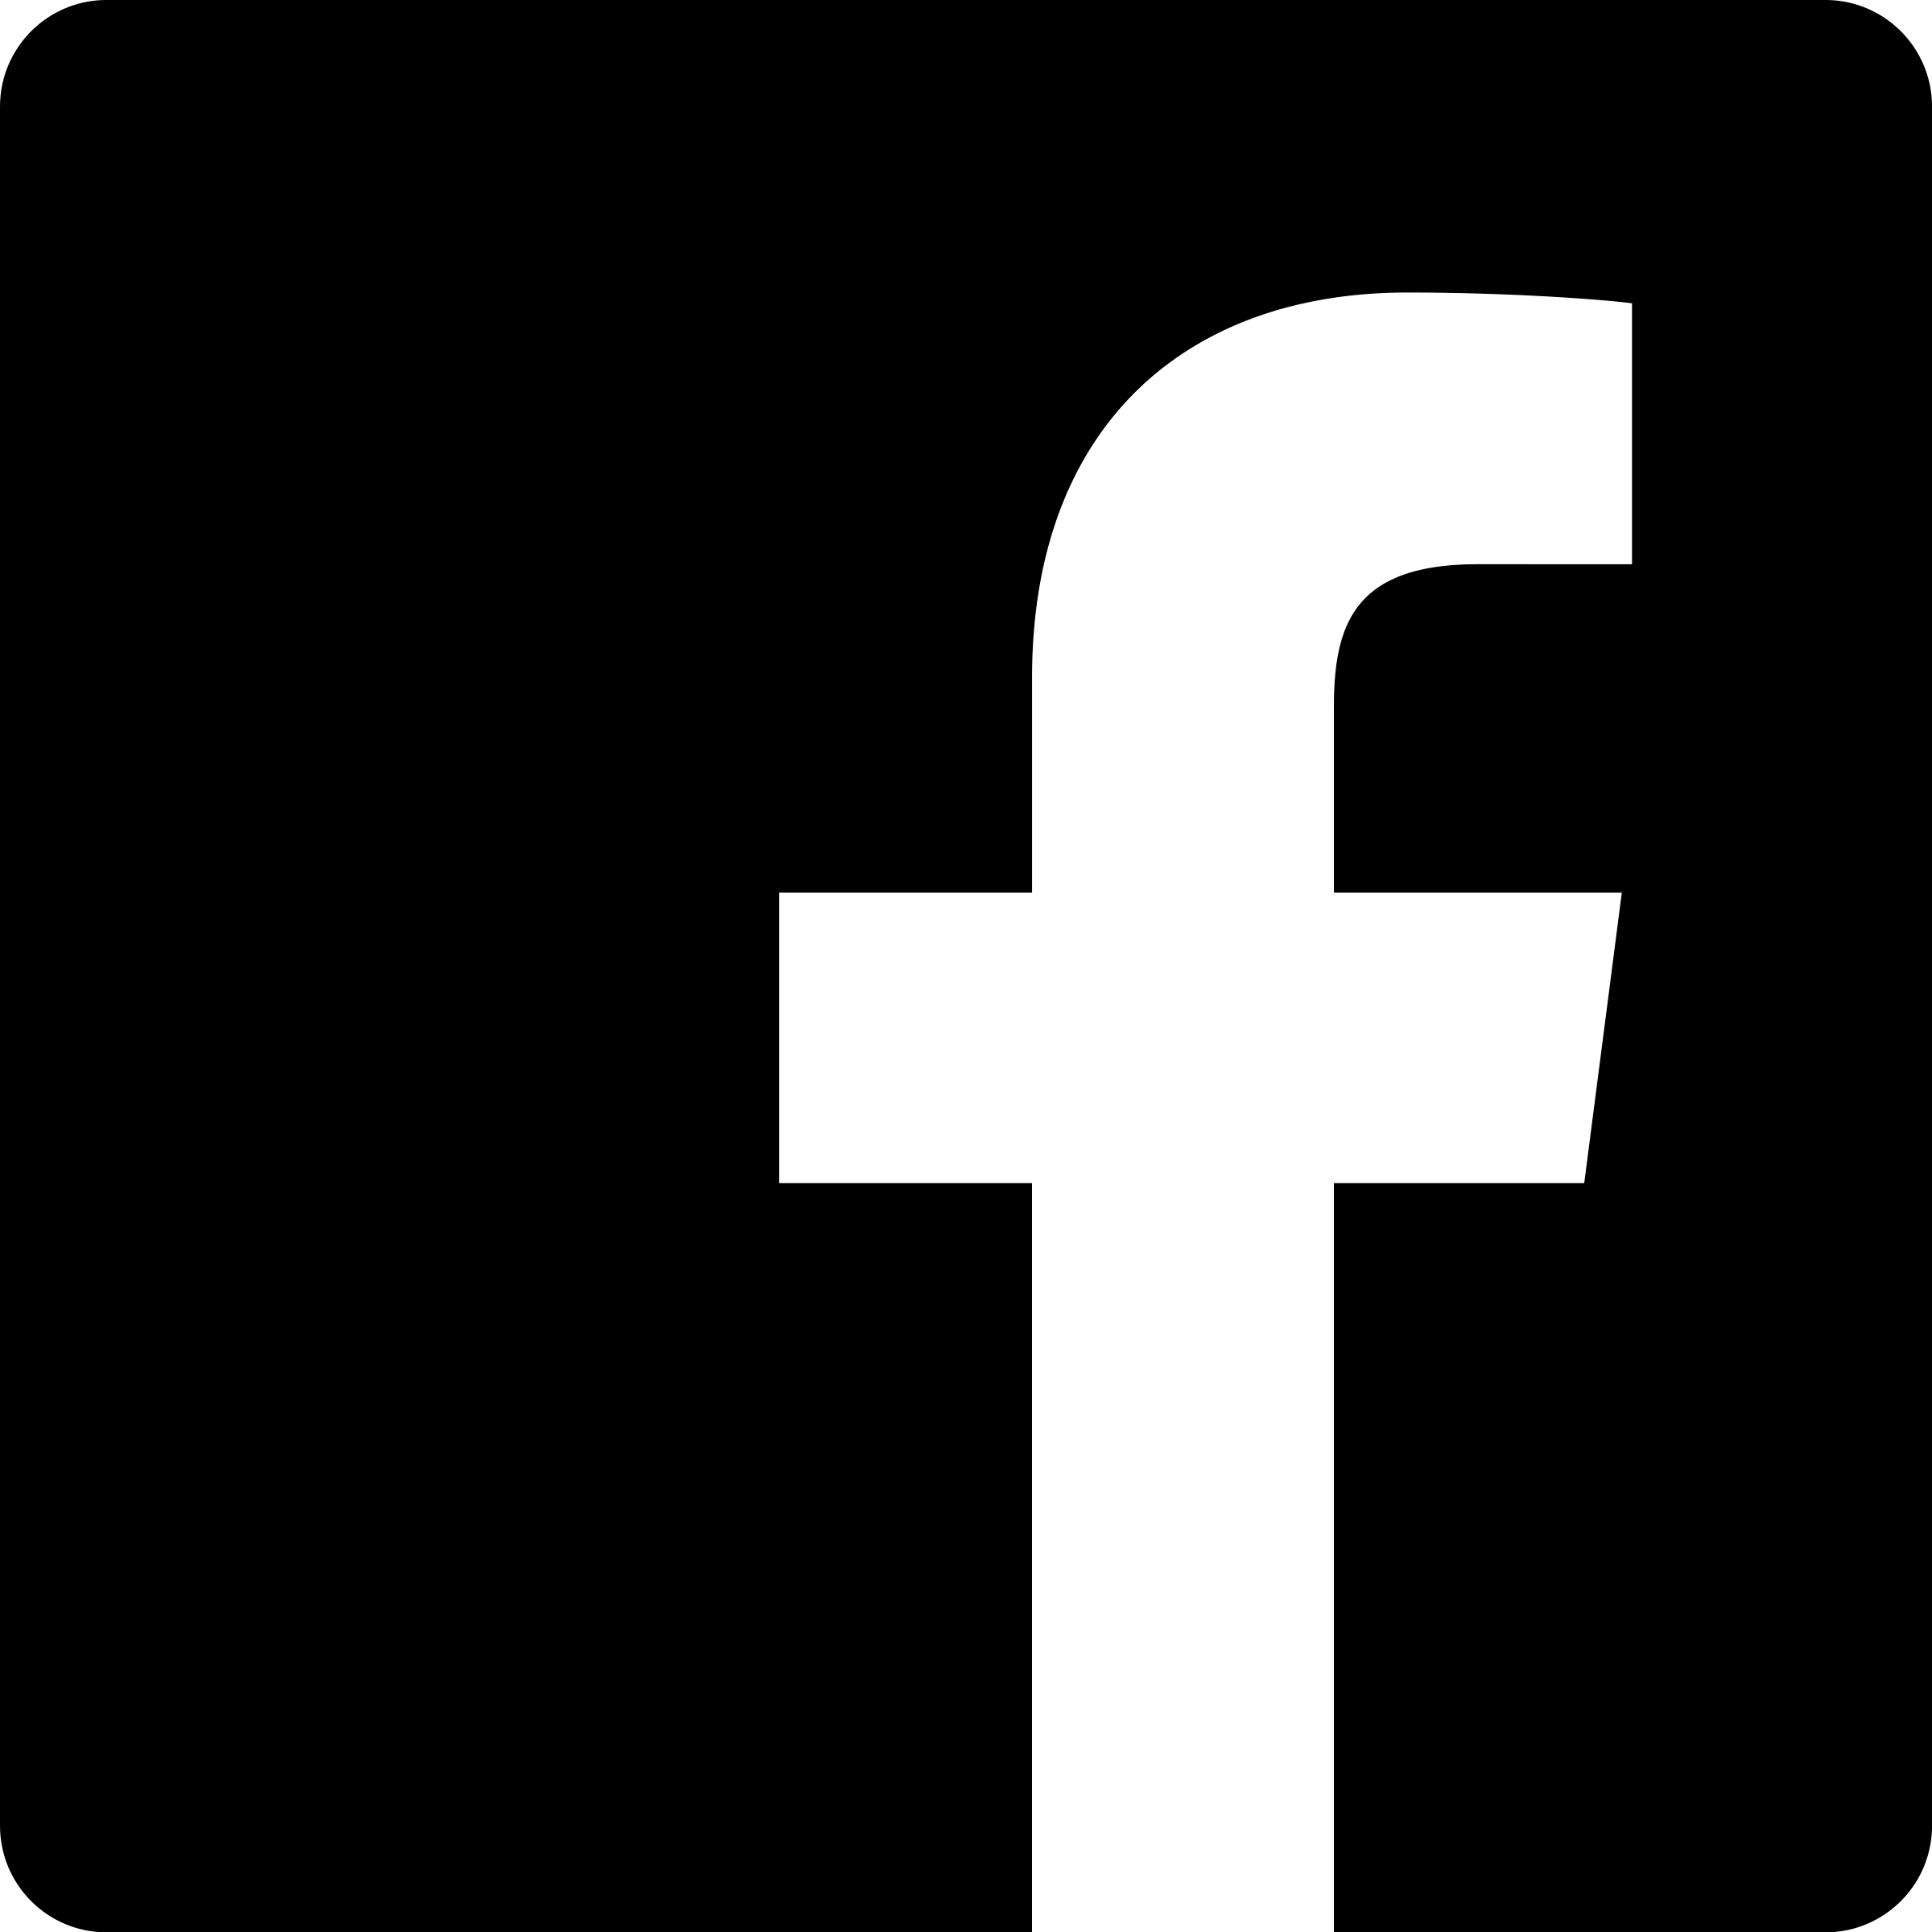 Фасебоок. Фейсбук. Facebook логотип. Иконки. Значок Фейсбук вектор.